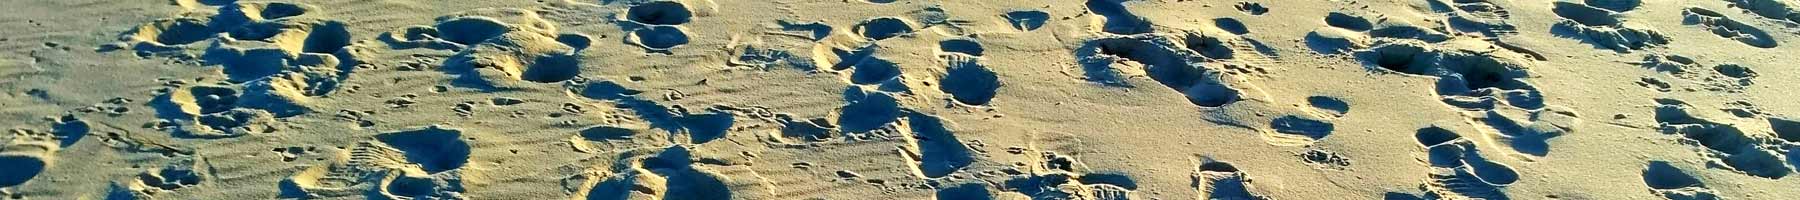 Footprints in sand, Parque del Plata, Uruguay